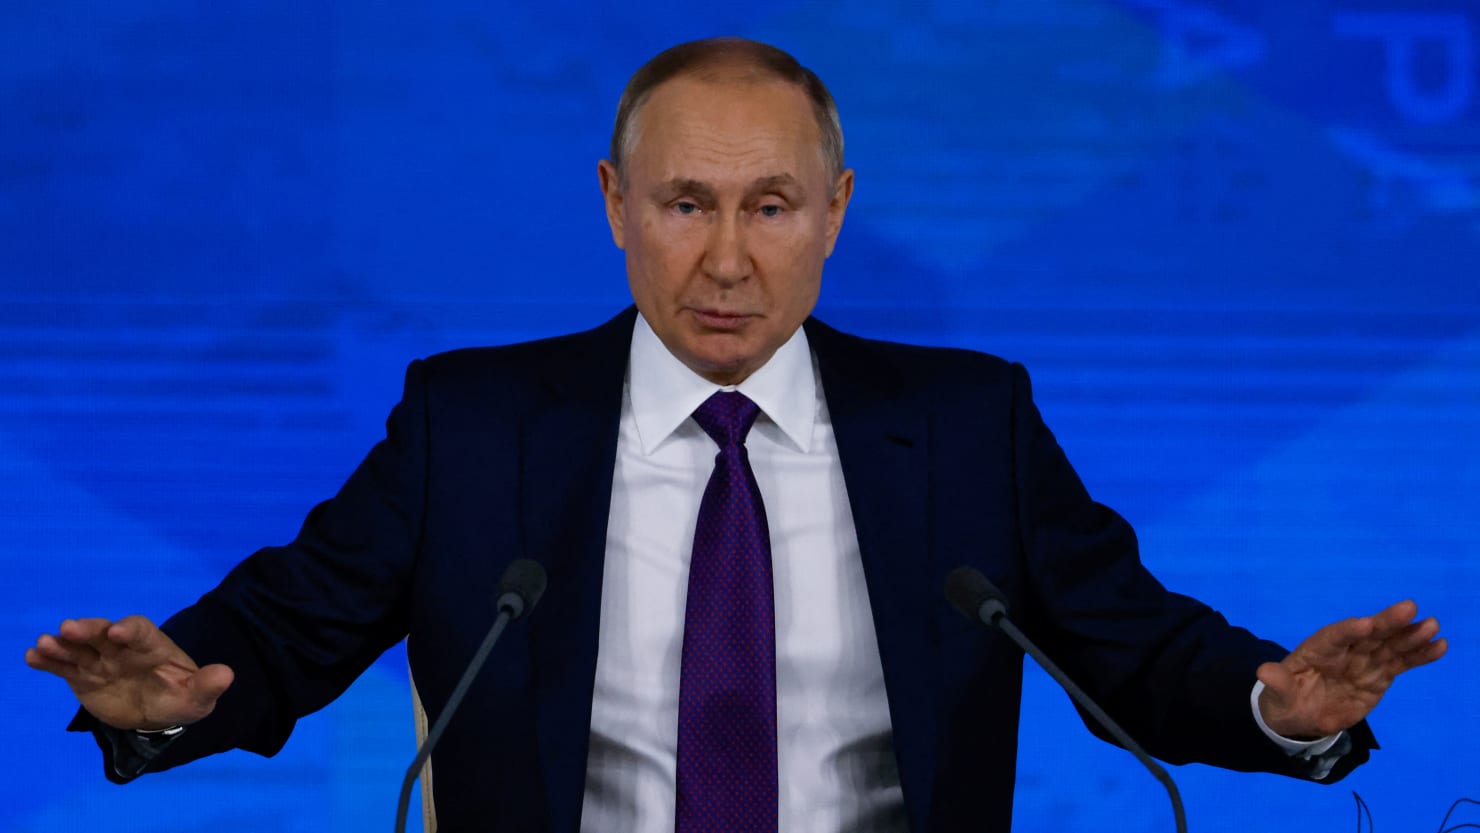 Putin pierde la calma al ser confrontado sobre Ucrania y afirma que de todas formas pertenece a Lenin